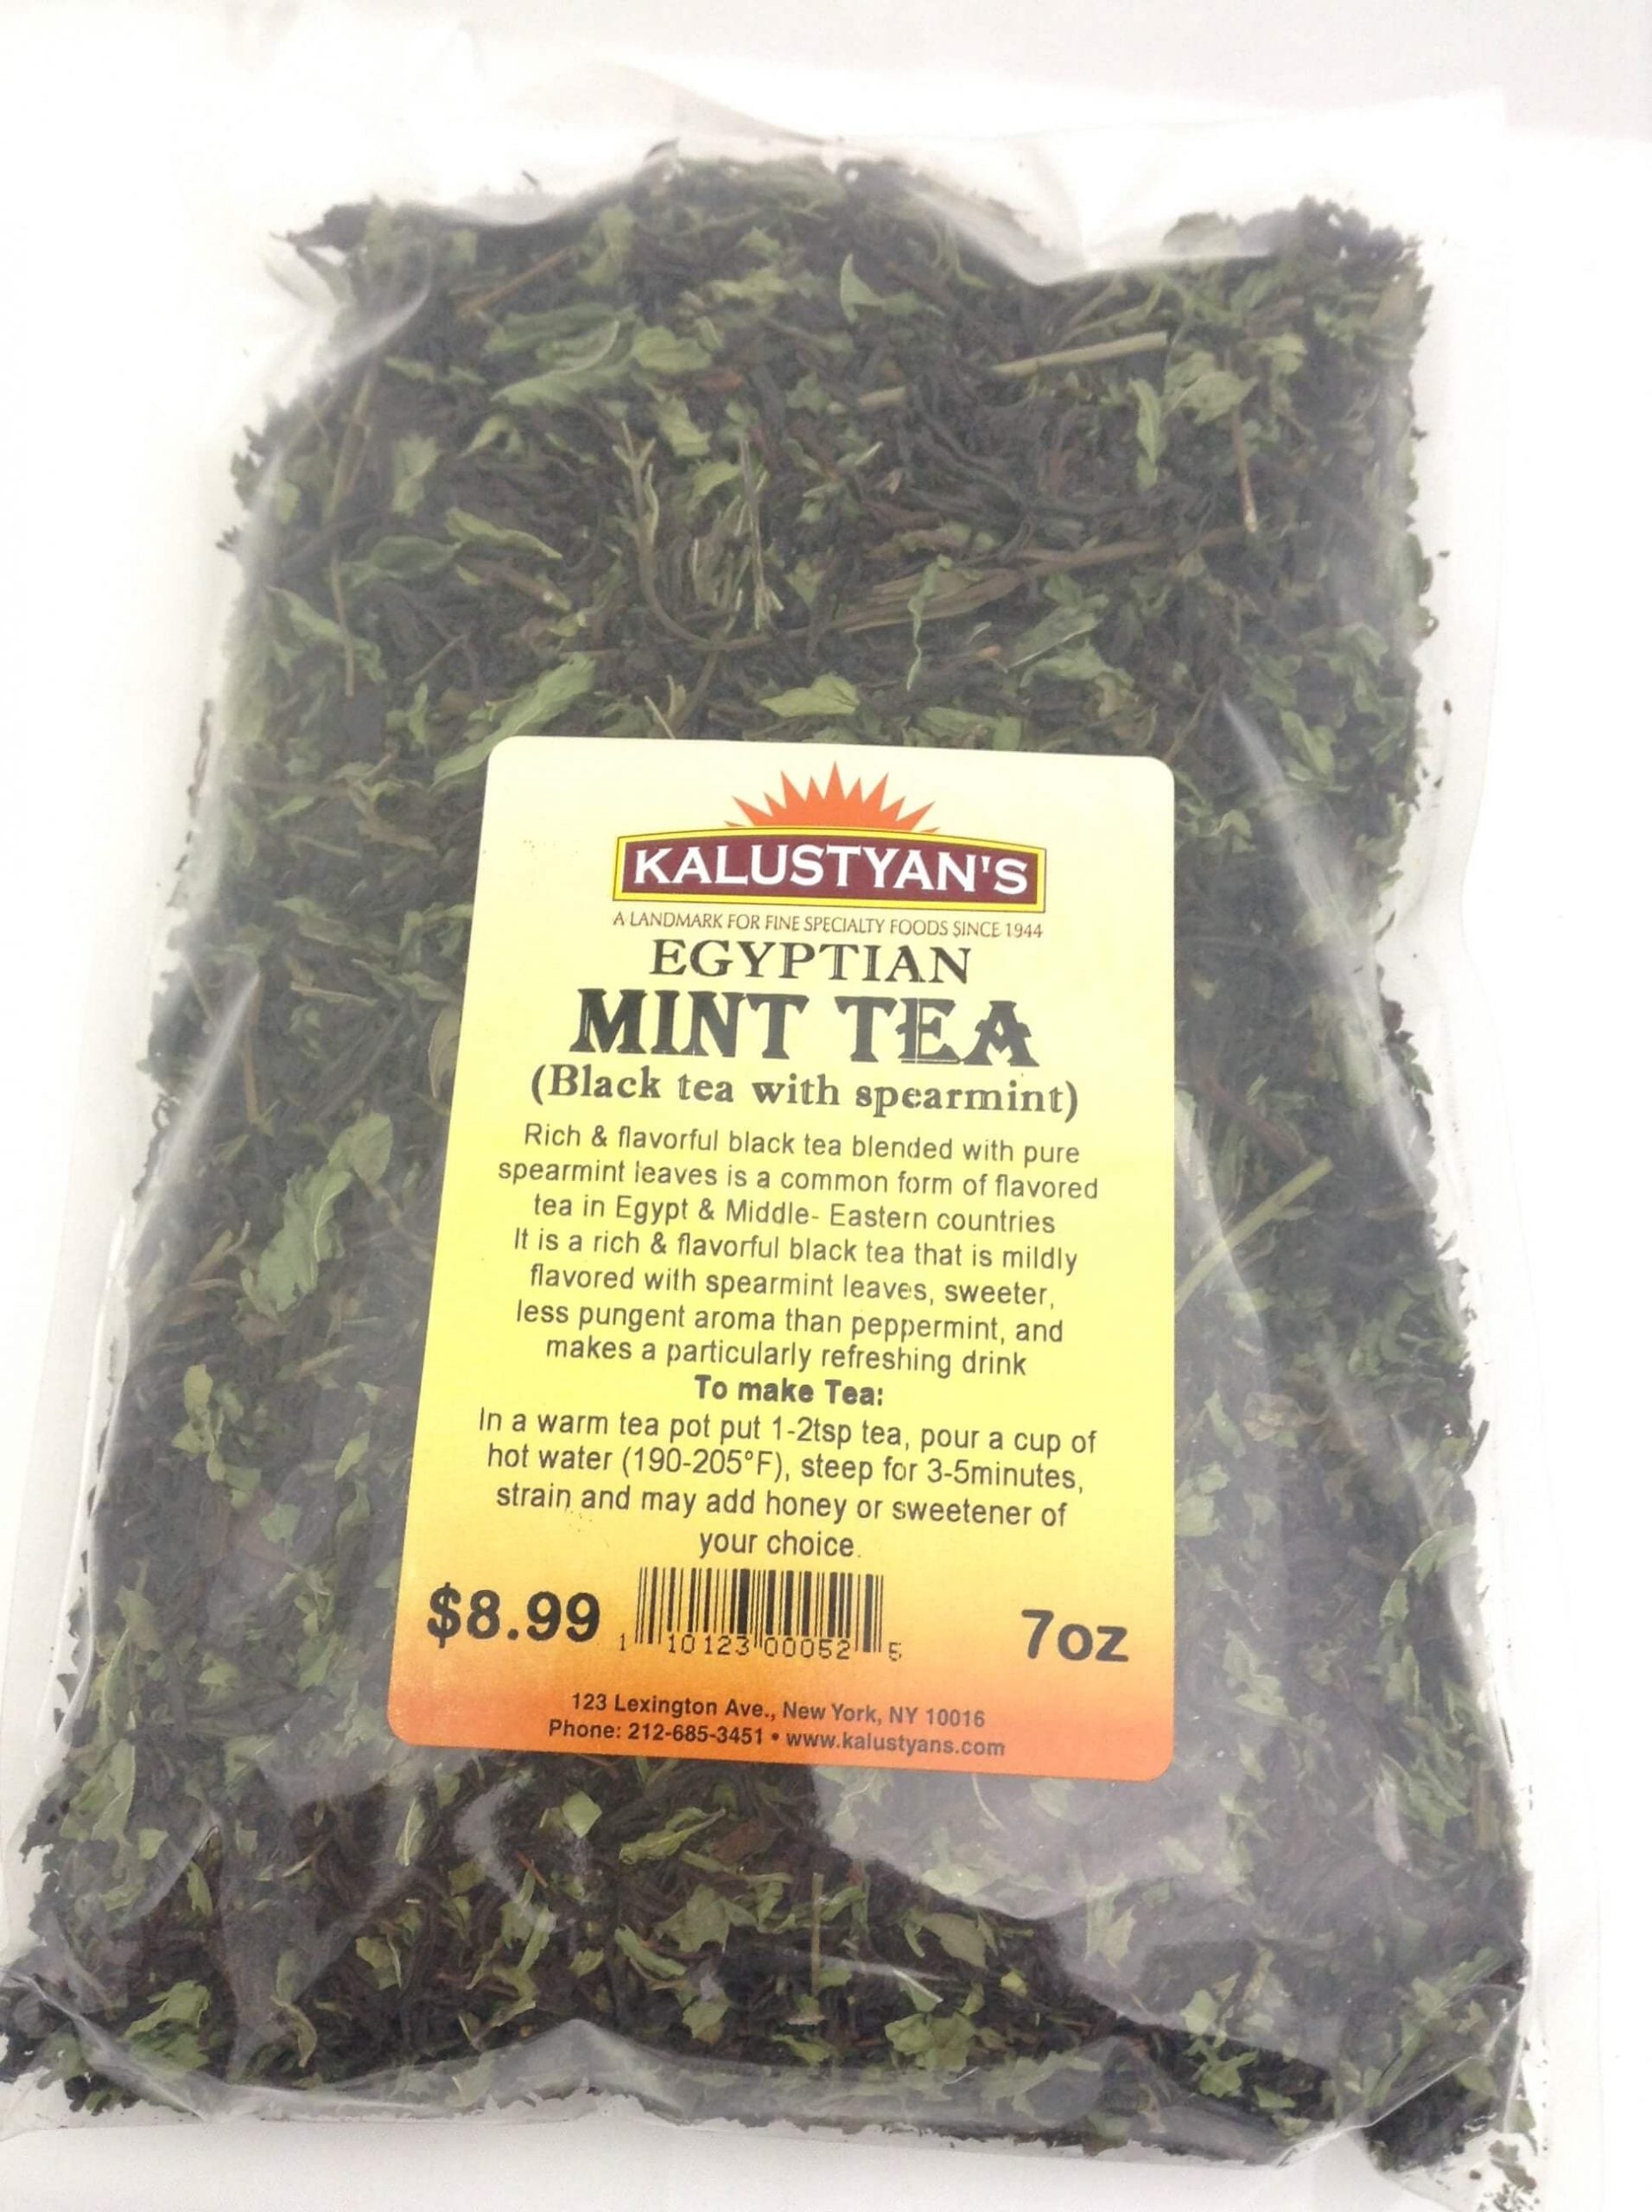 Buy Best Spearmint tea in Pakistan